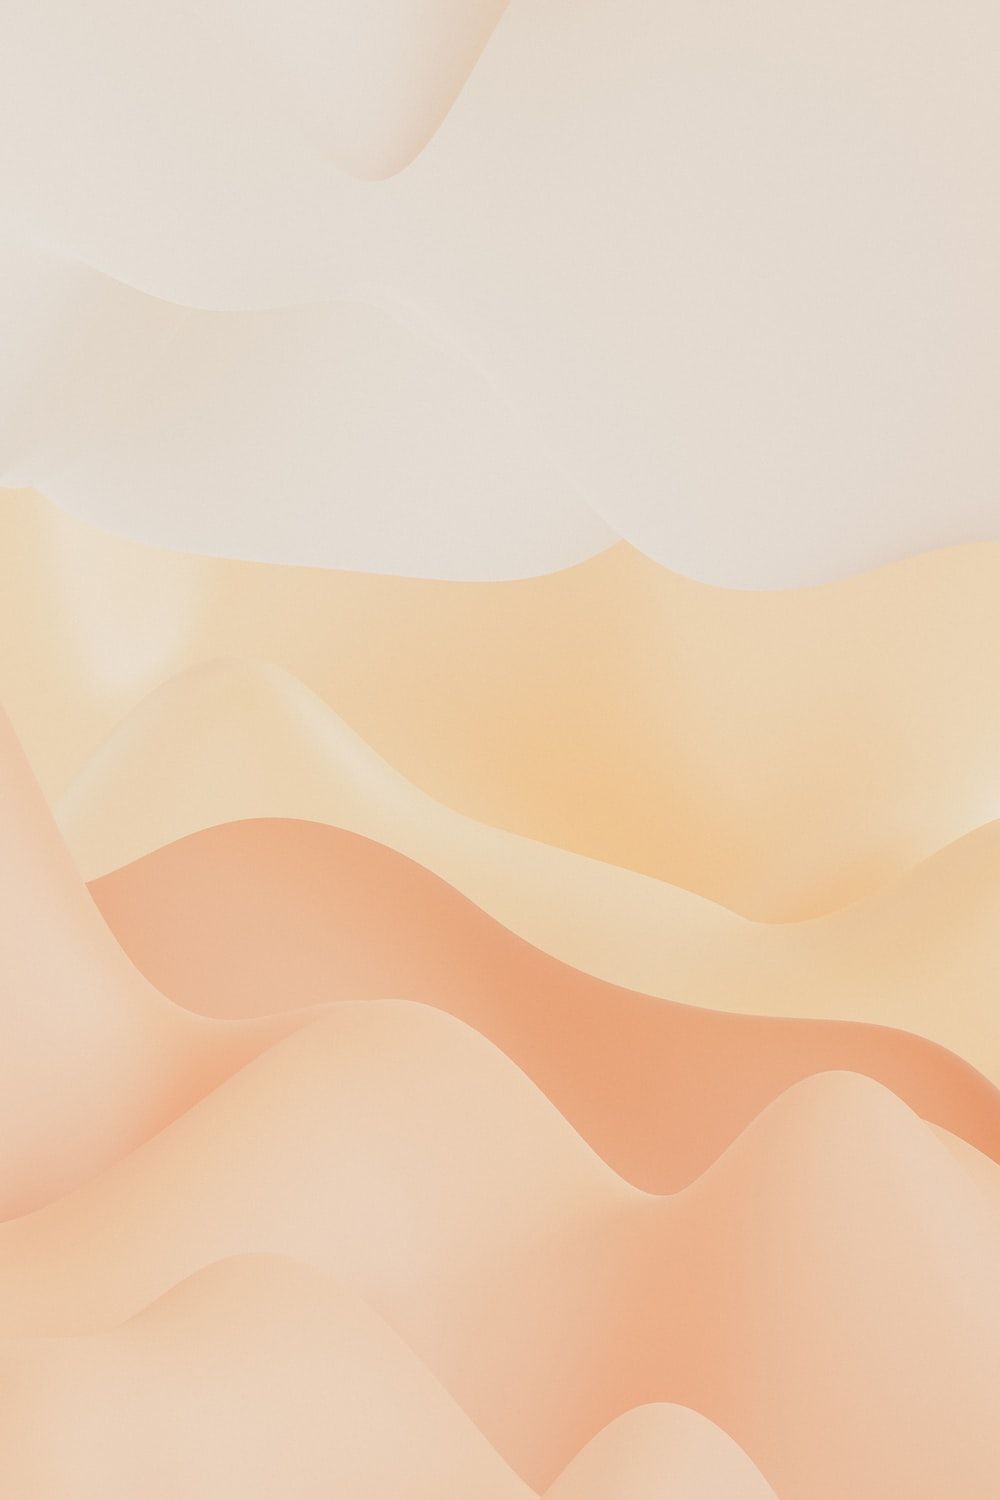 A minimalist landscape of soft pastel colors. - Desert